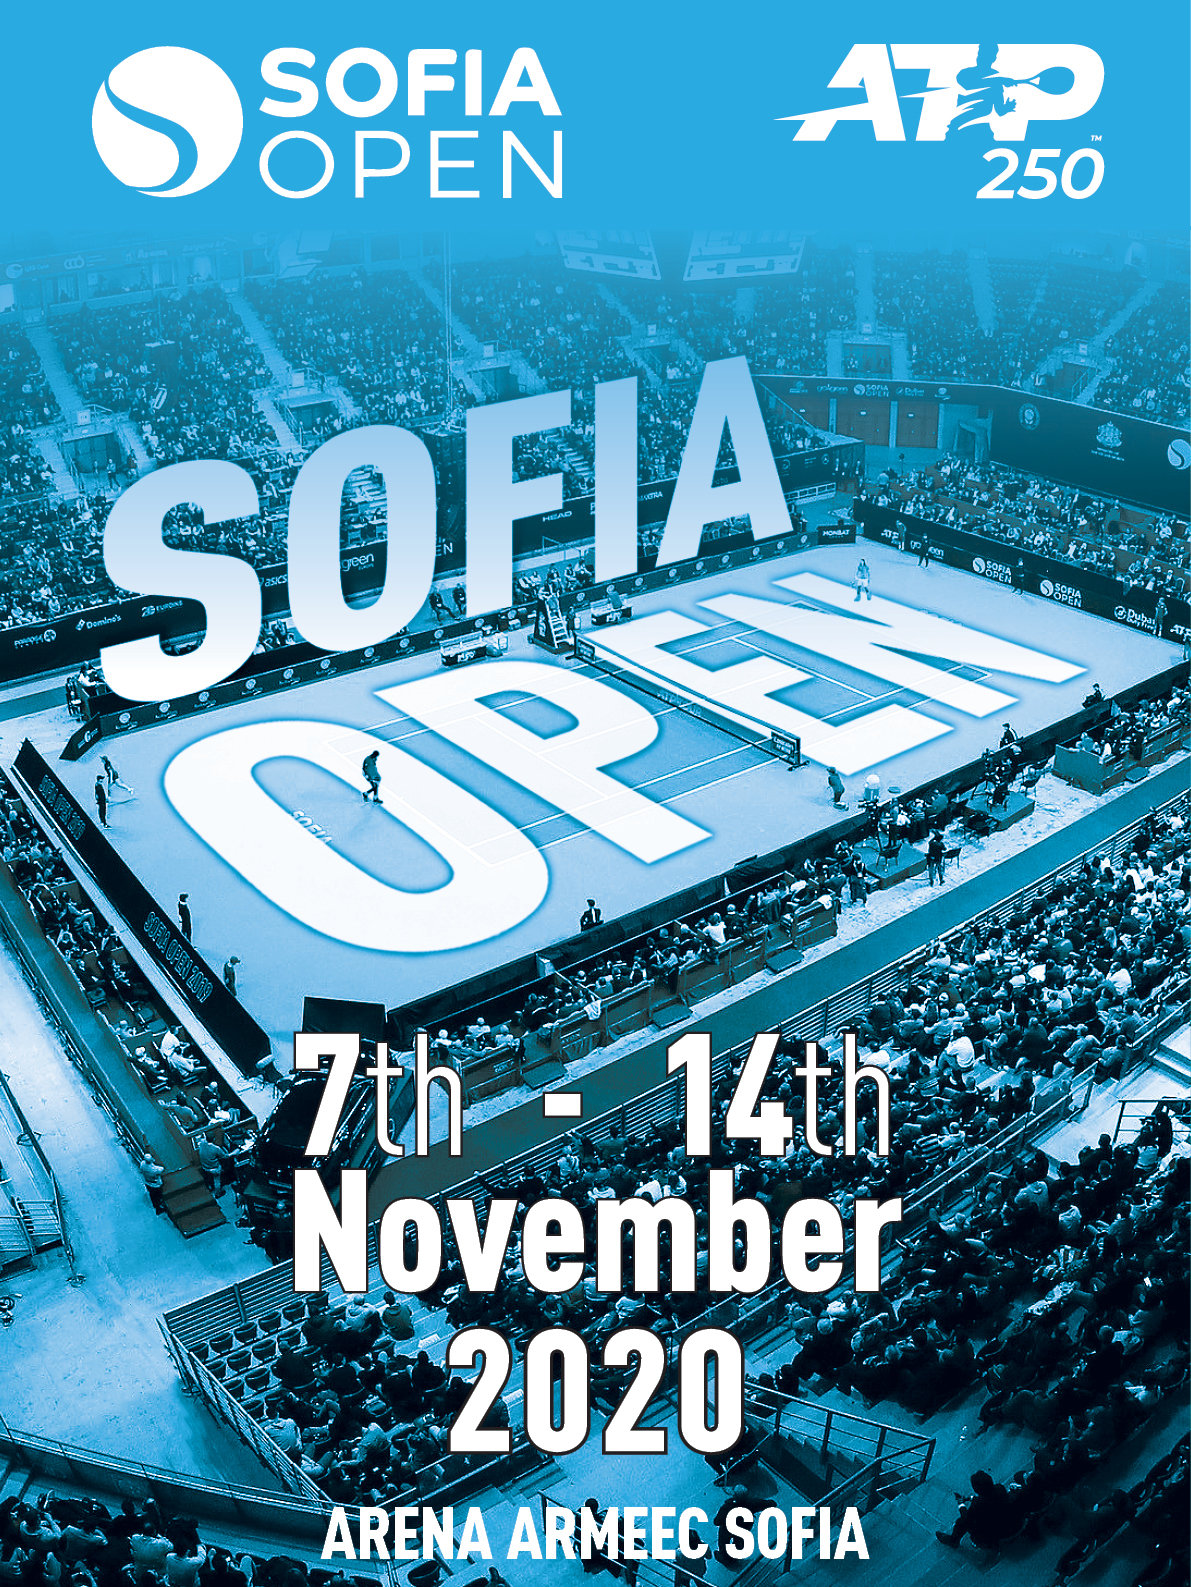 Sofia Open ще се проведе от 7 и до 14 ноември